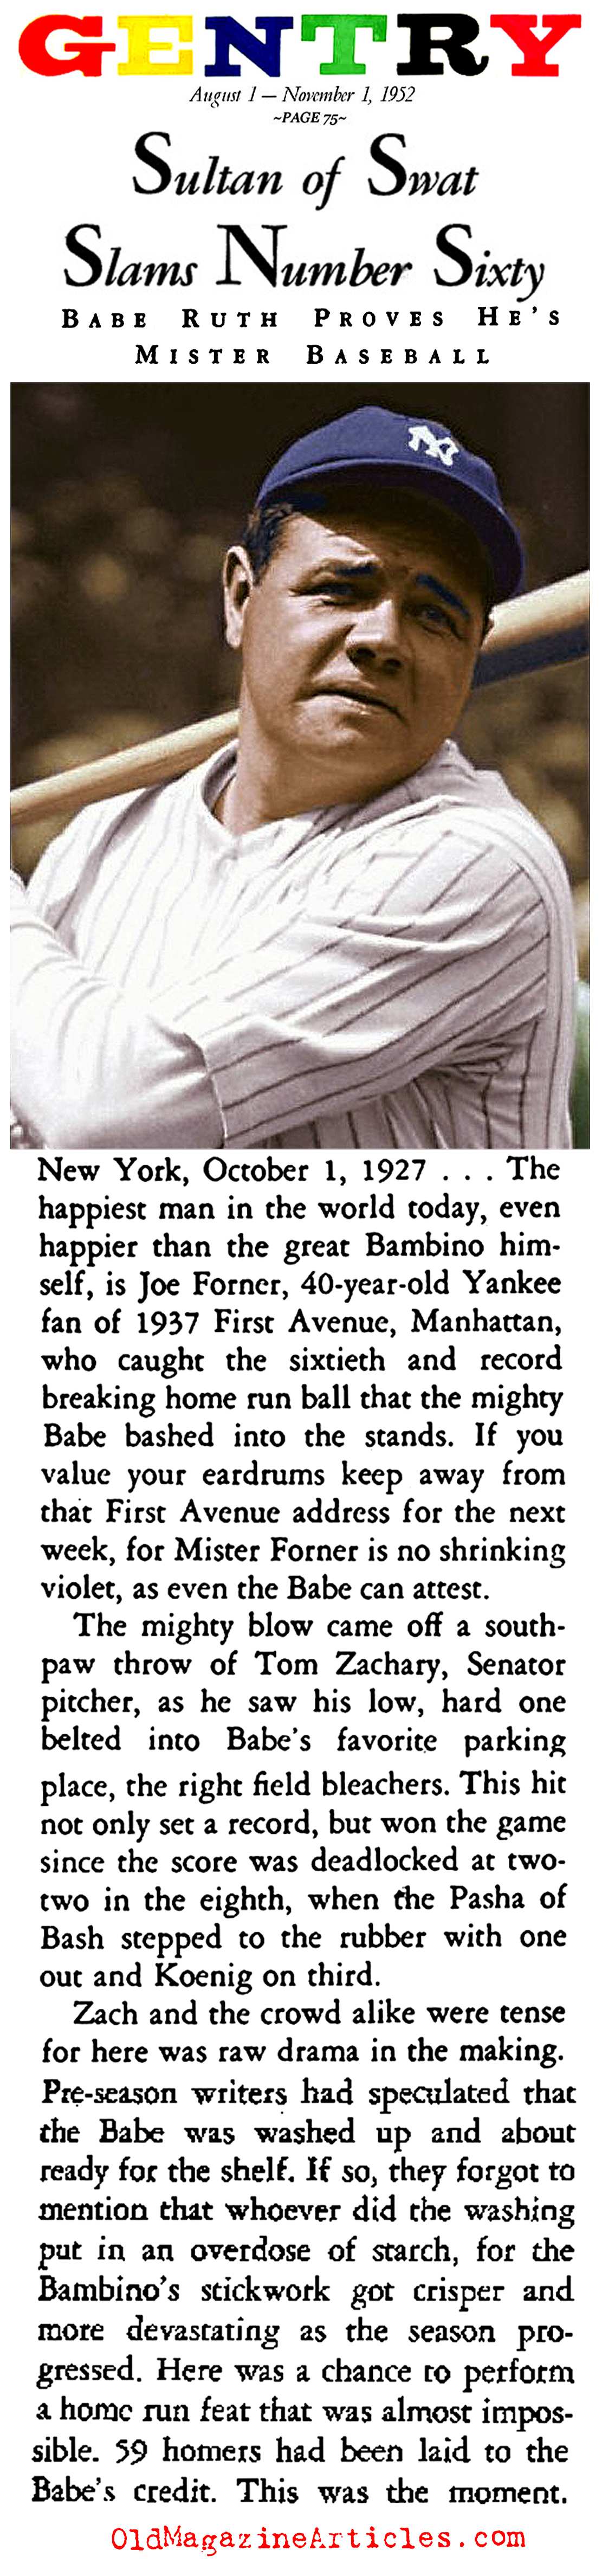 Home Run No. 60 (Gentry Magazine, 1952)